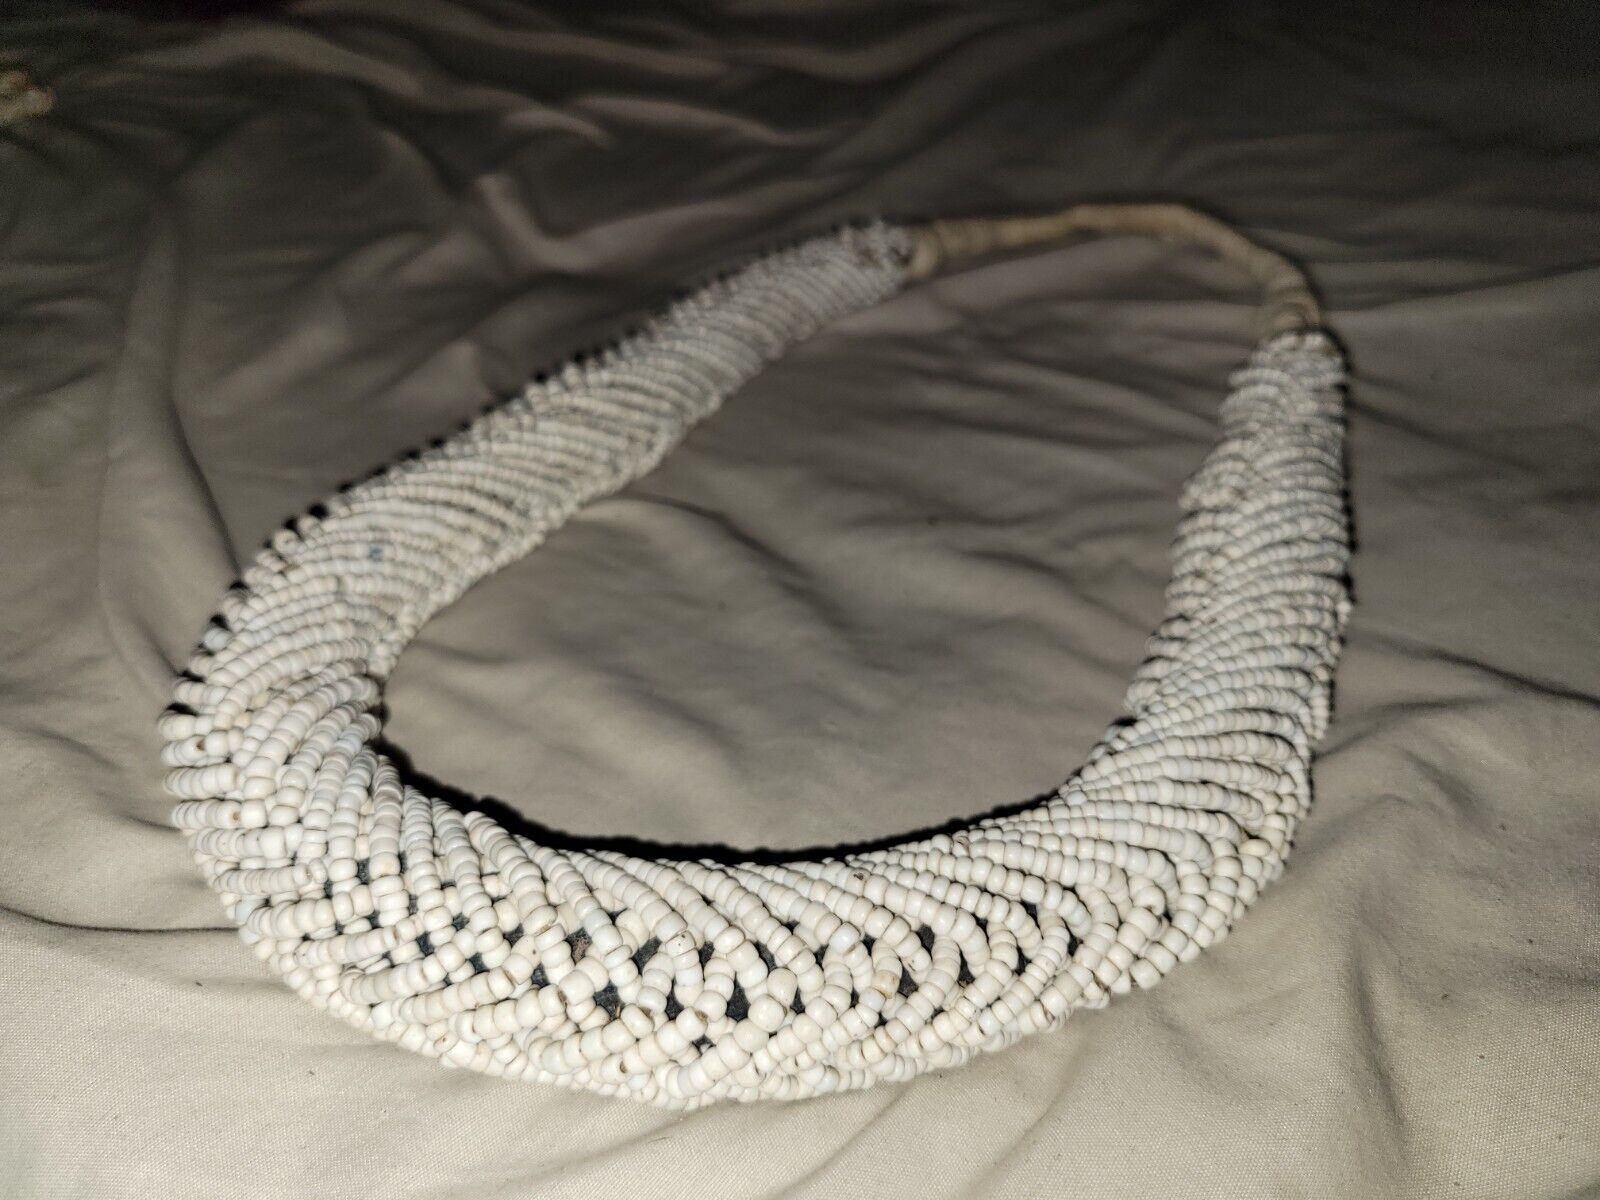  Vintage White Glass Beaded Wedding Necklace- Kuba Tribe Ivory Coast Africa.....